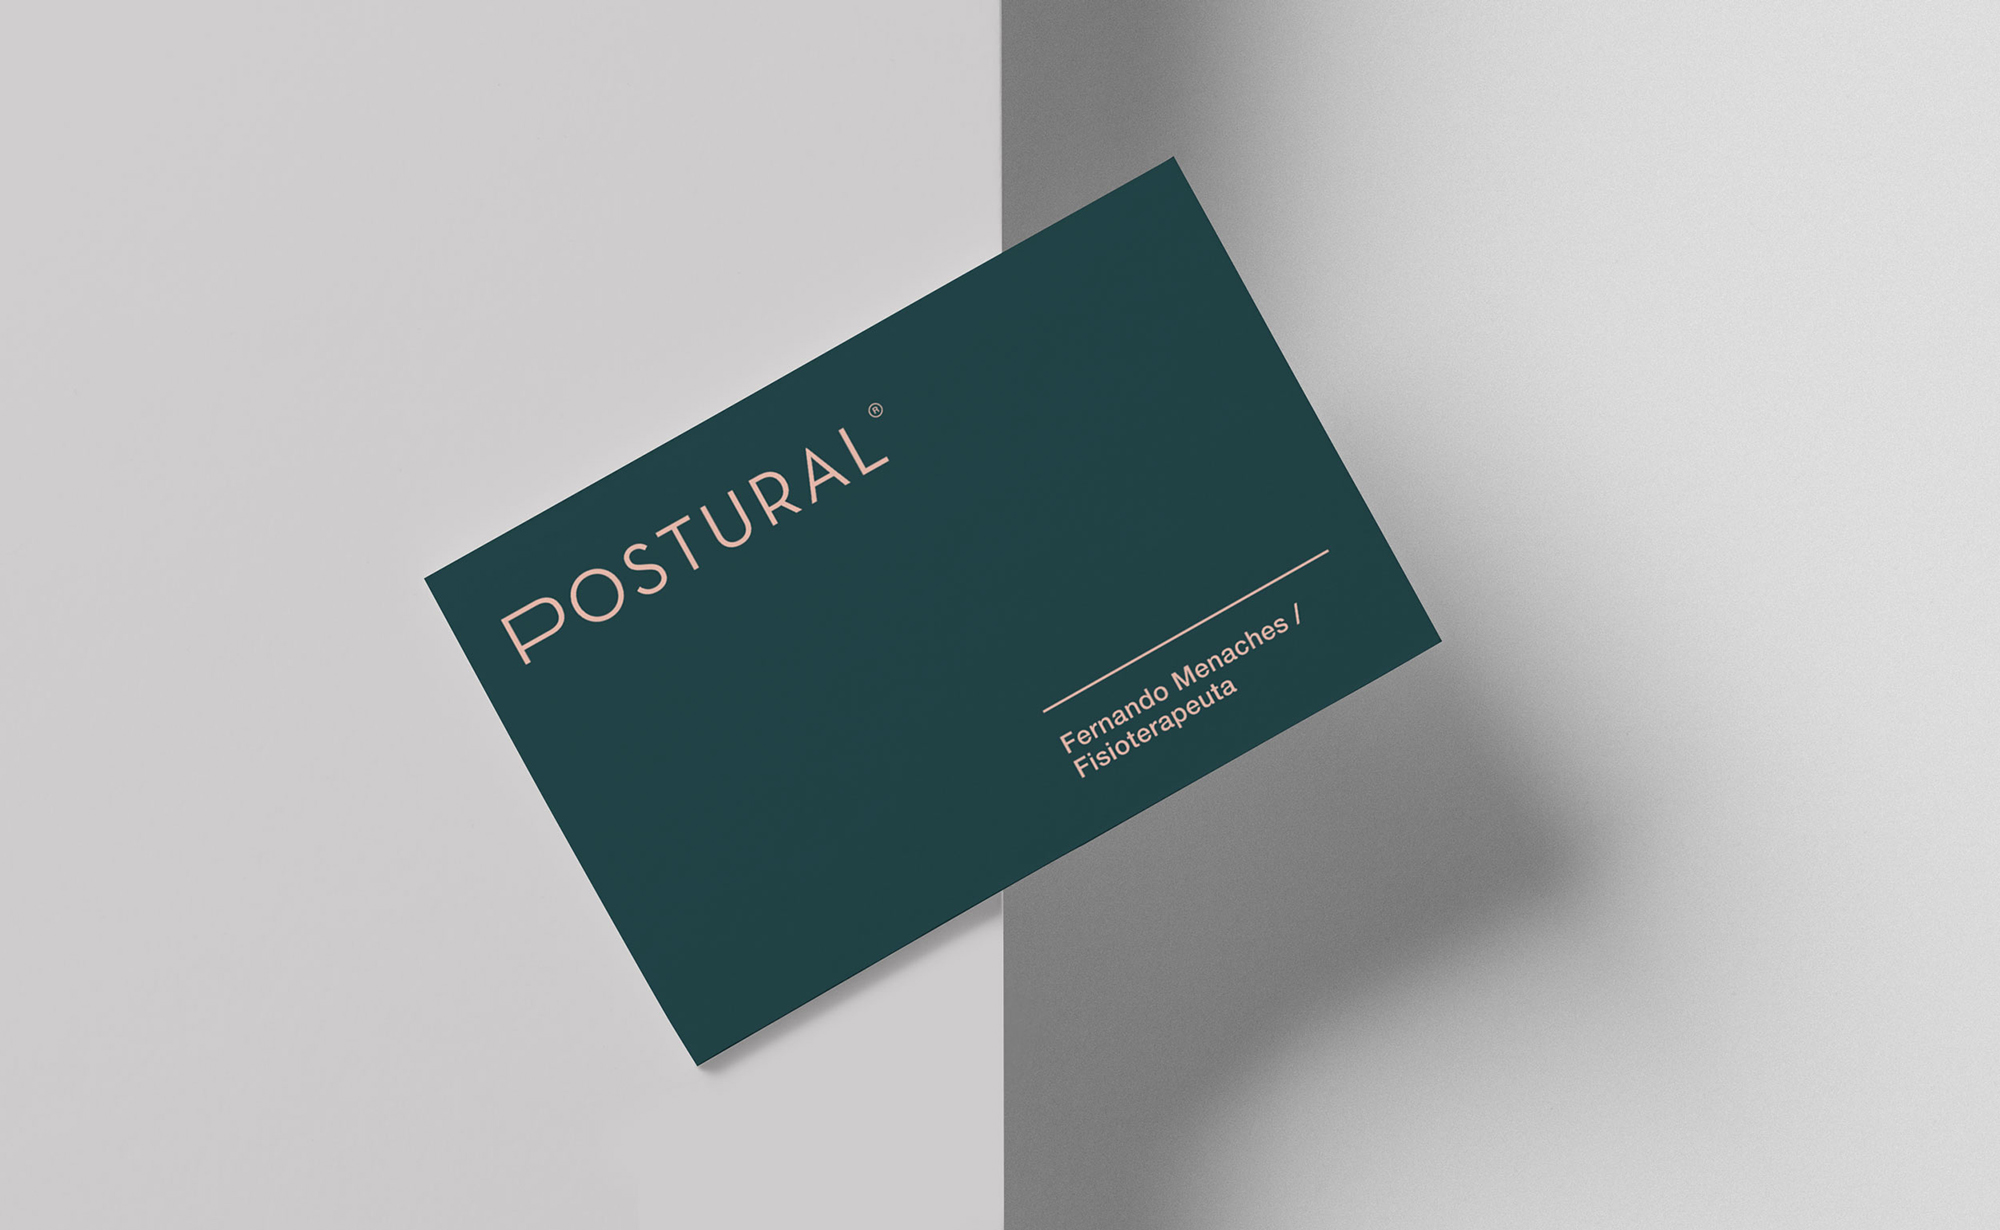 Diseño y desarrollo de identidad visual corporativa para Postural. Detalle tarjeta de visita.